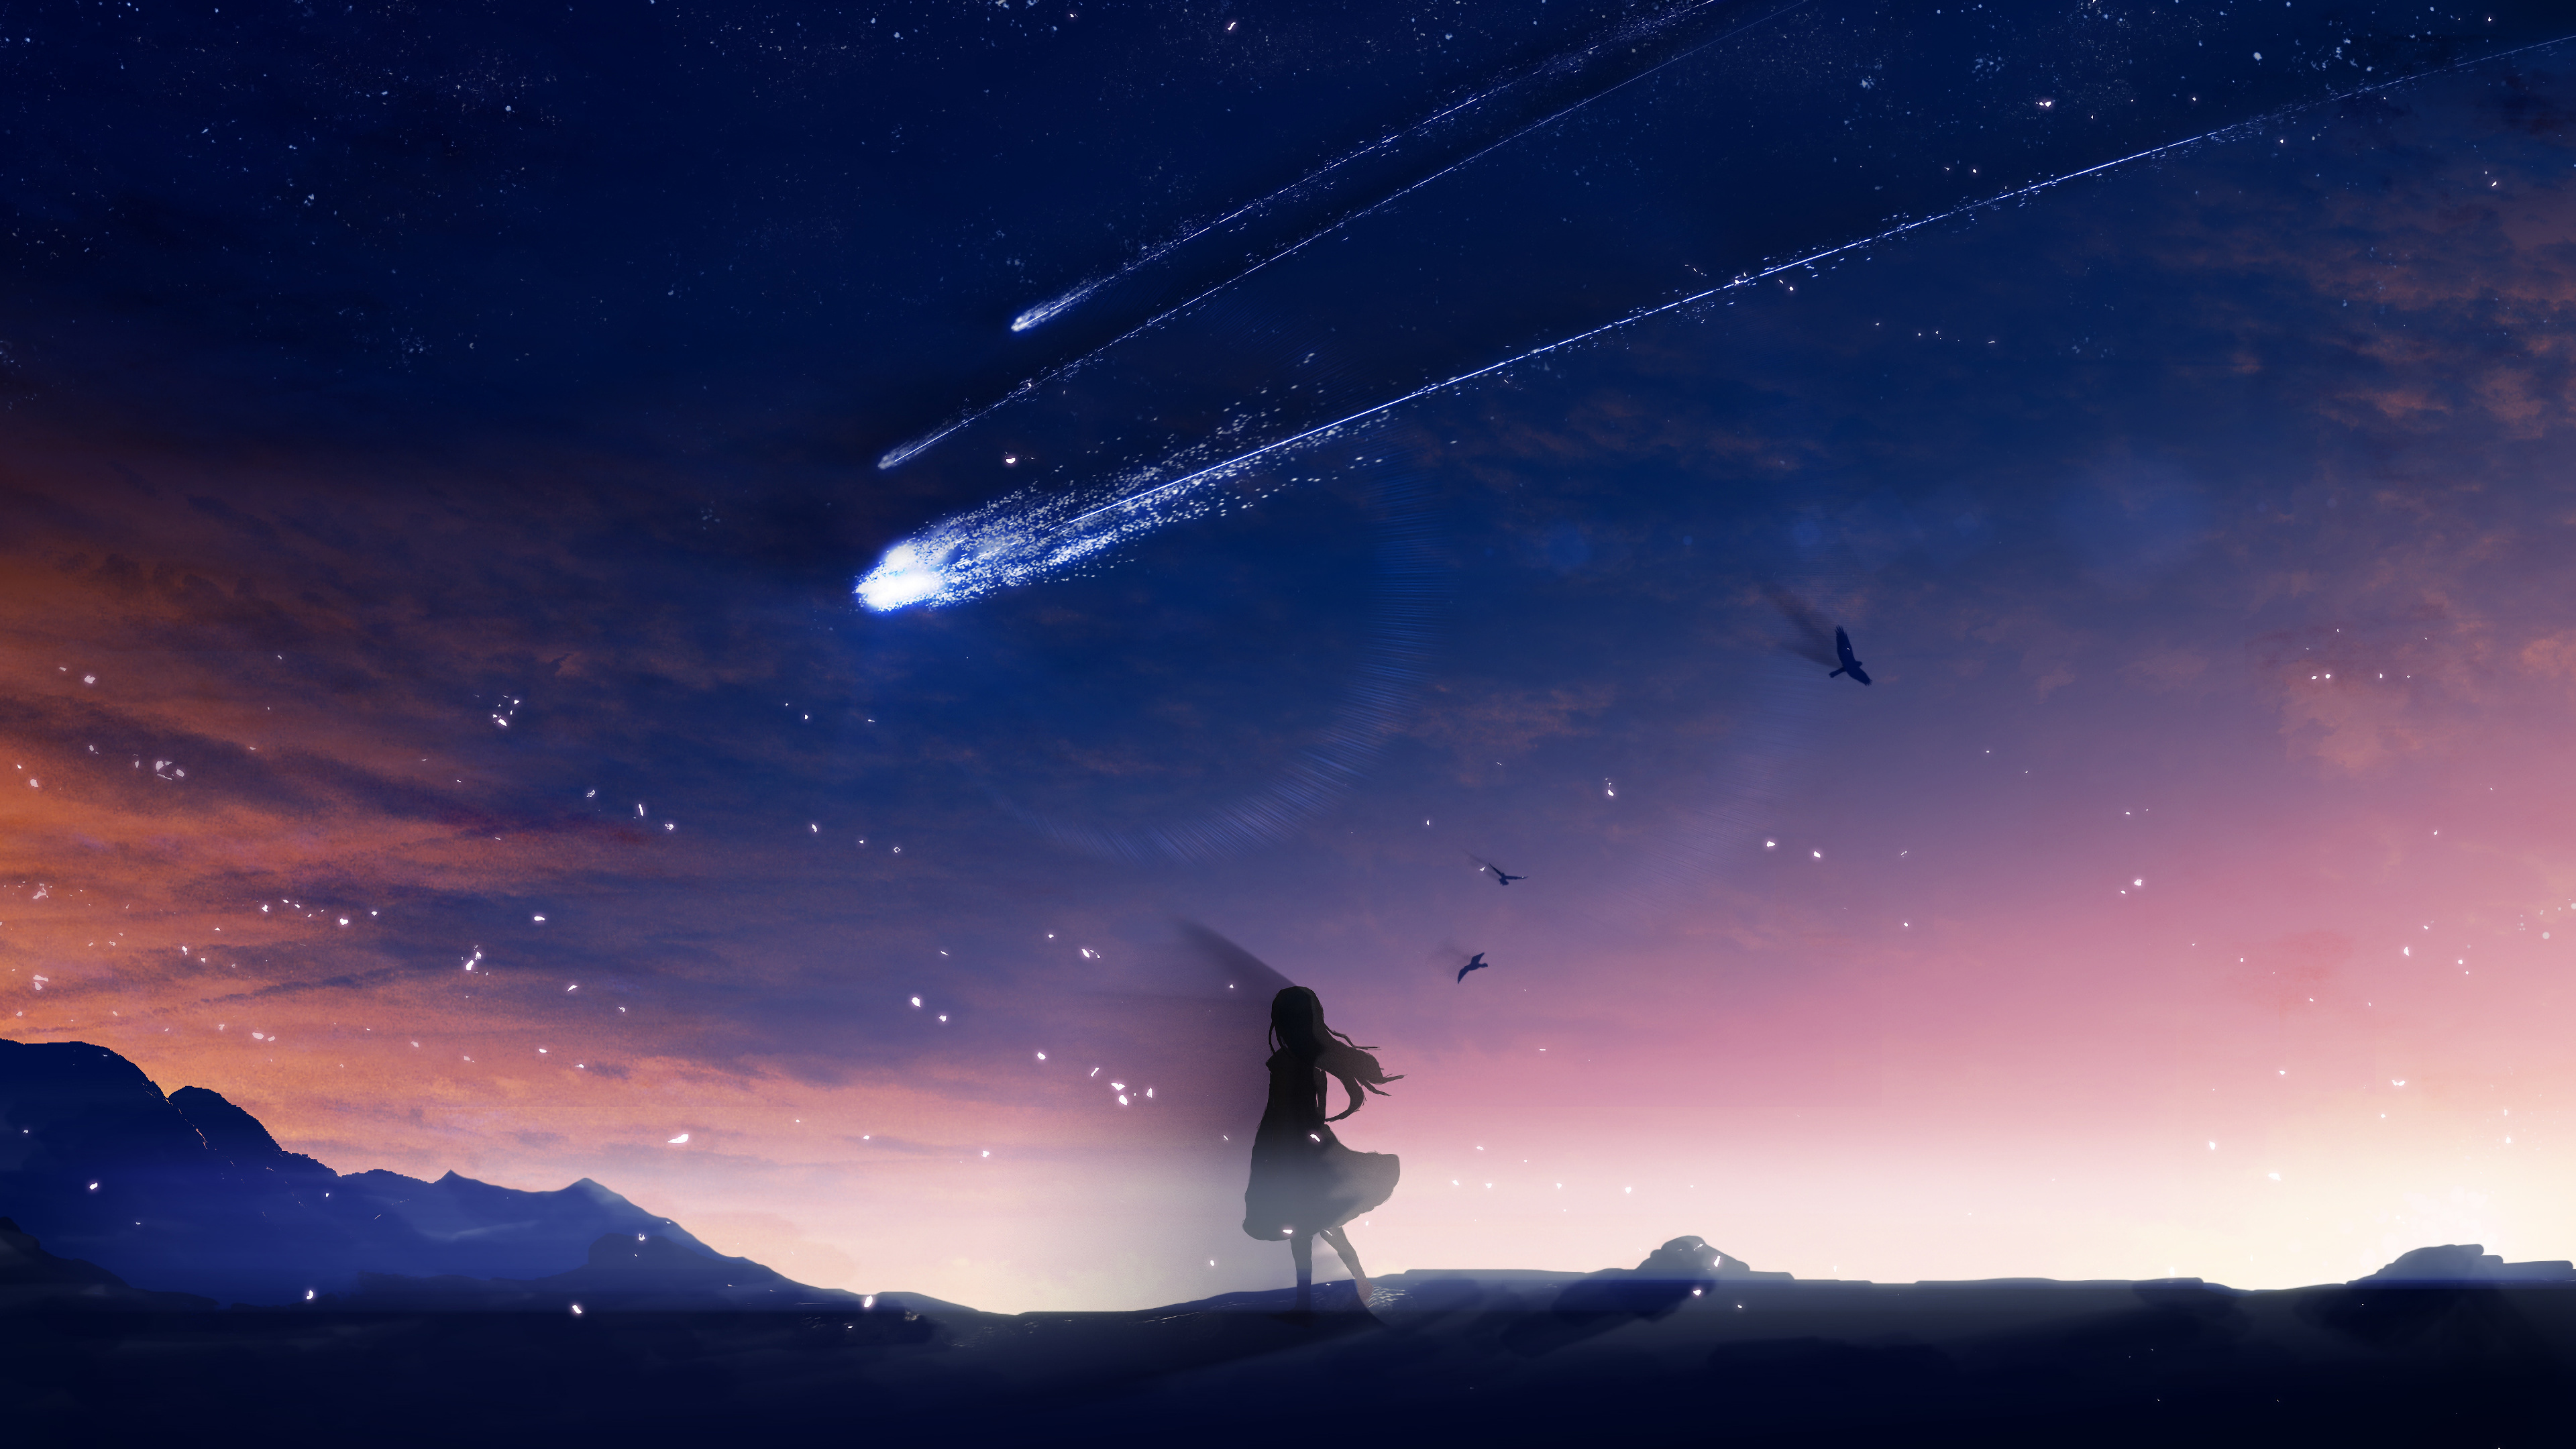 Anime kite in sky dusk Wallpaper 4k Ultra HD